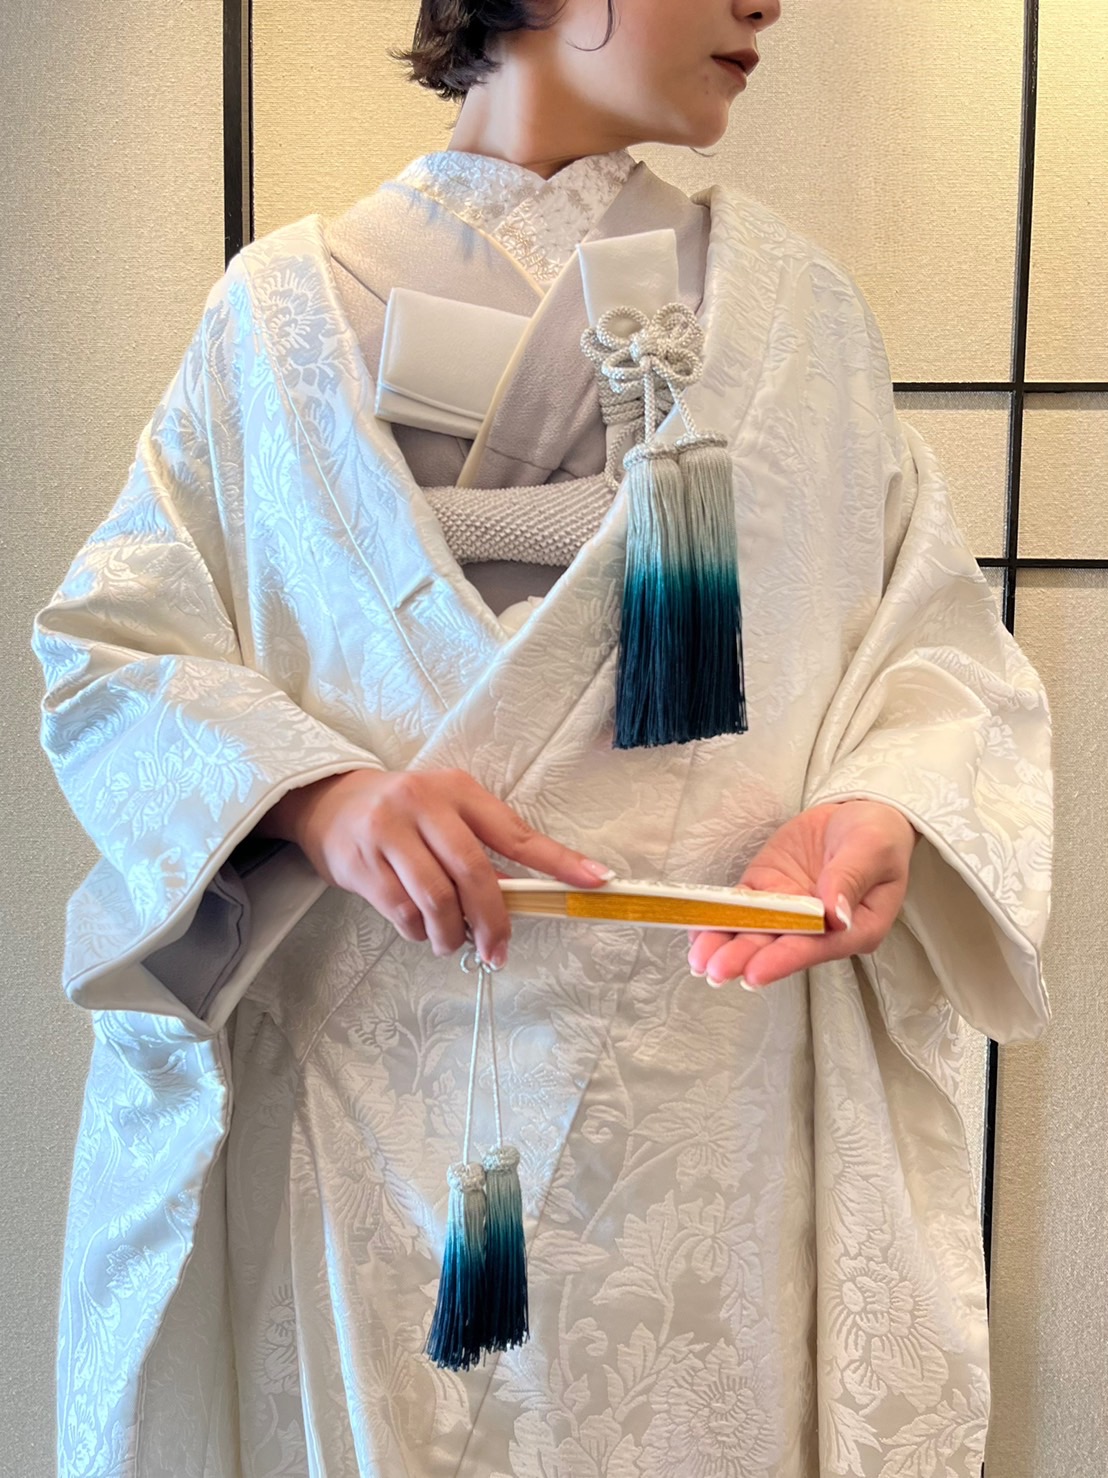 ご結婚式で人気のある日本の伝統衣裳、白無垢は色小物や色掛下、アクセサリーを合わせることでモダンでおしゃれな着こなしに仕上がります